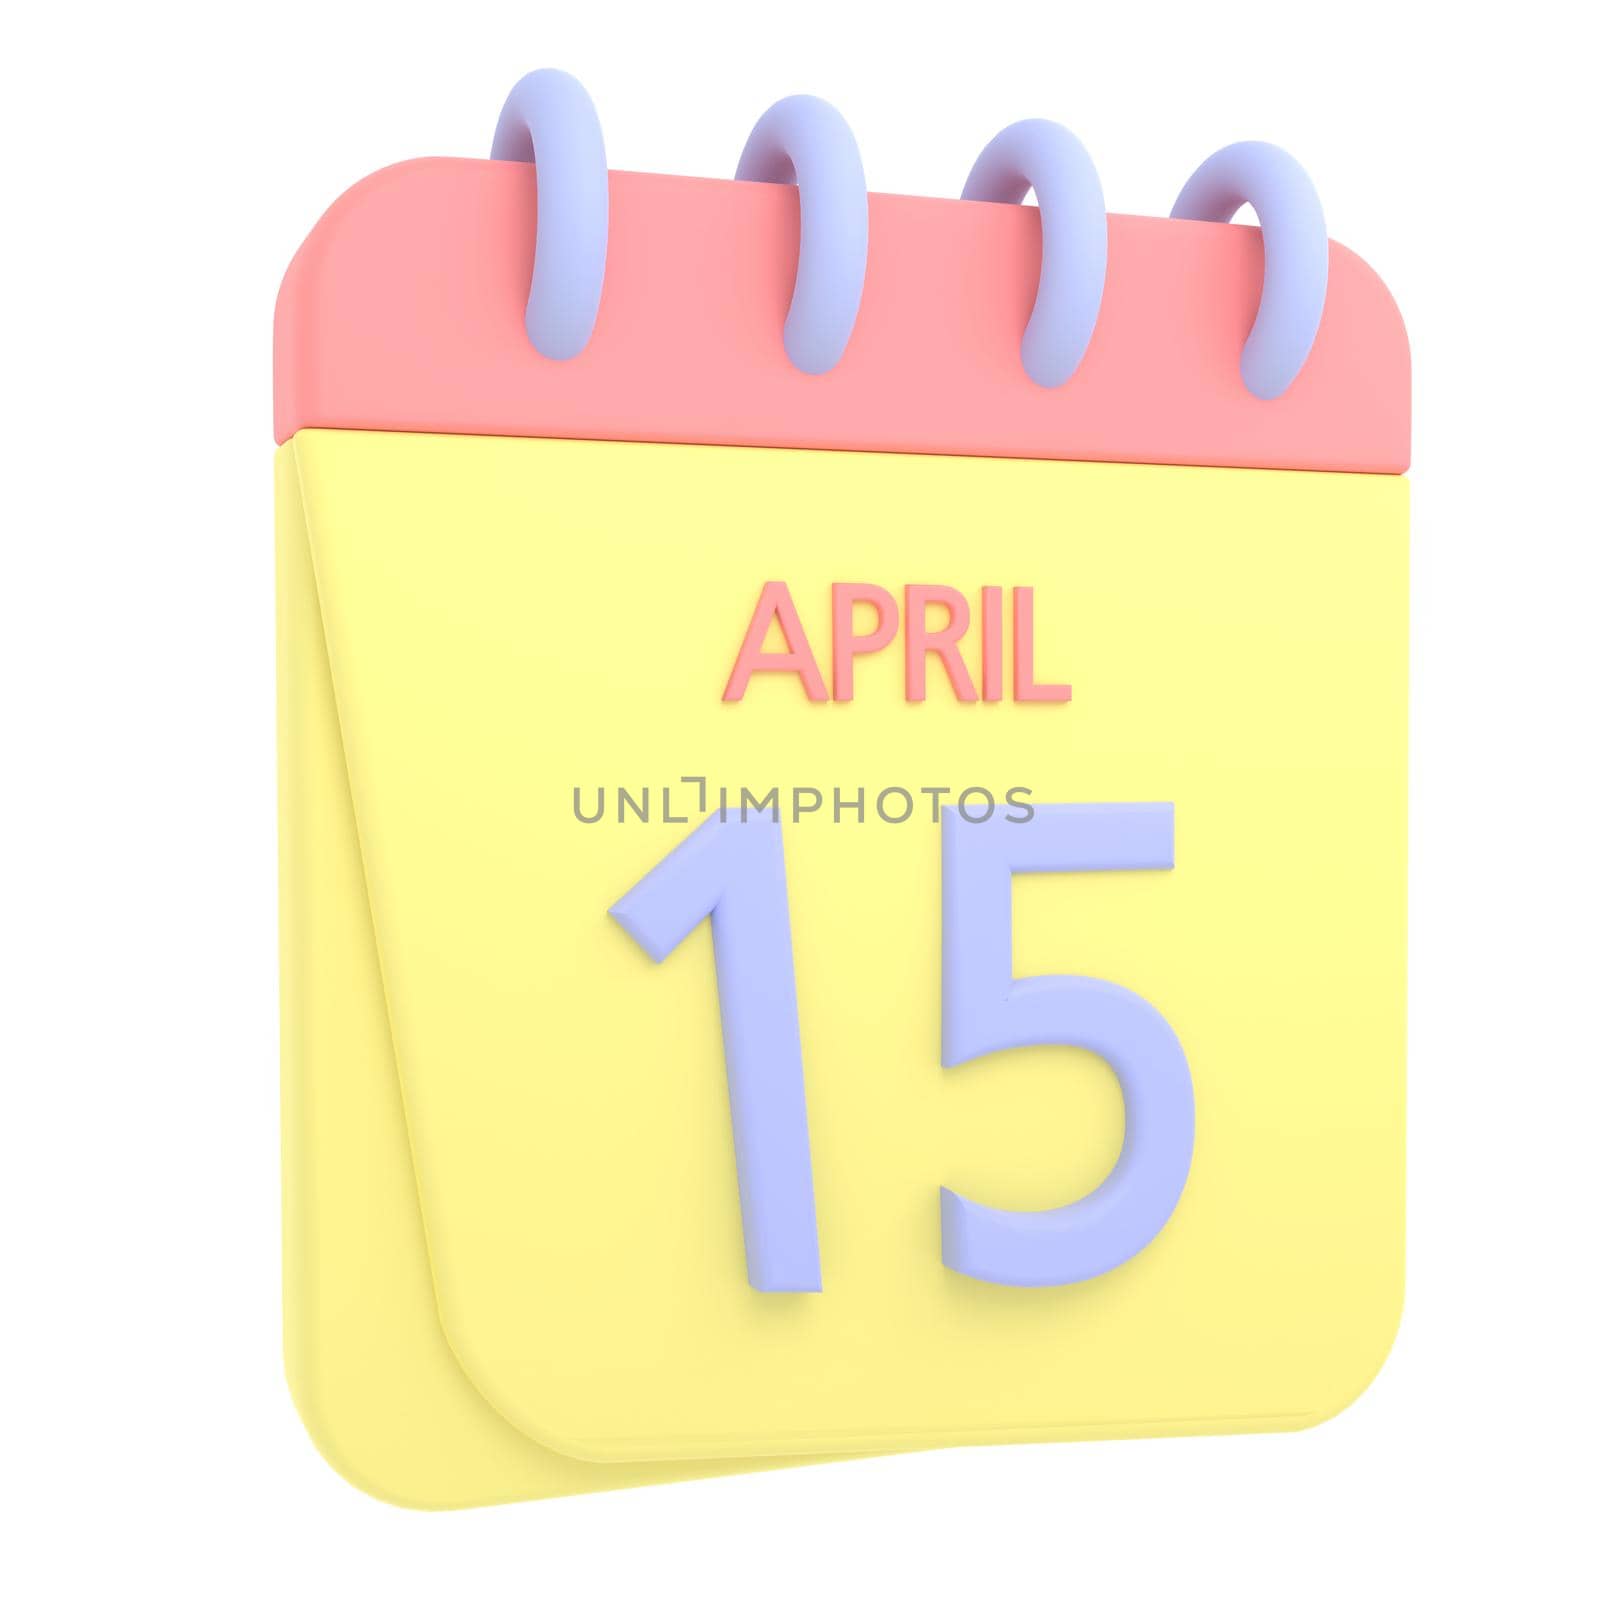 15th April 3D calendar icon by AnnaMarin